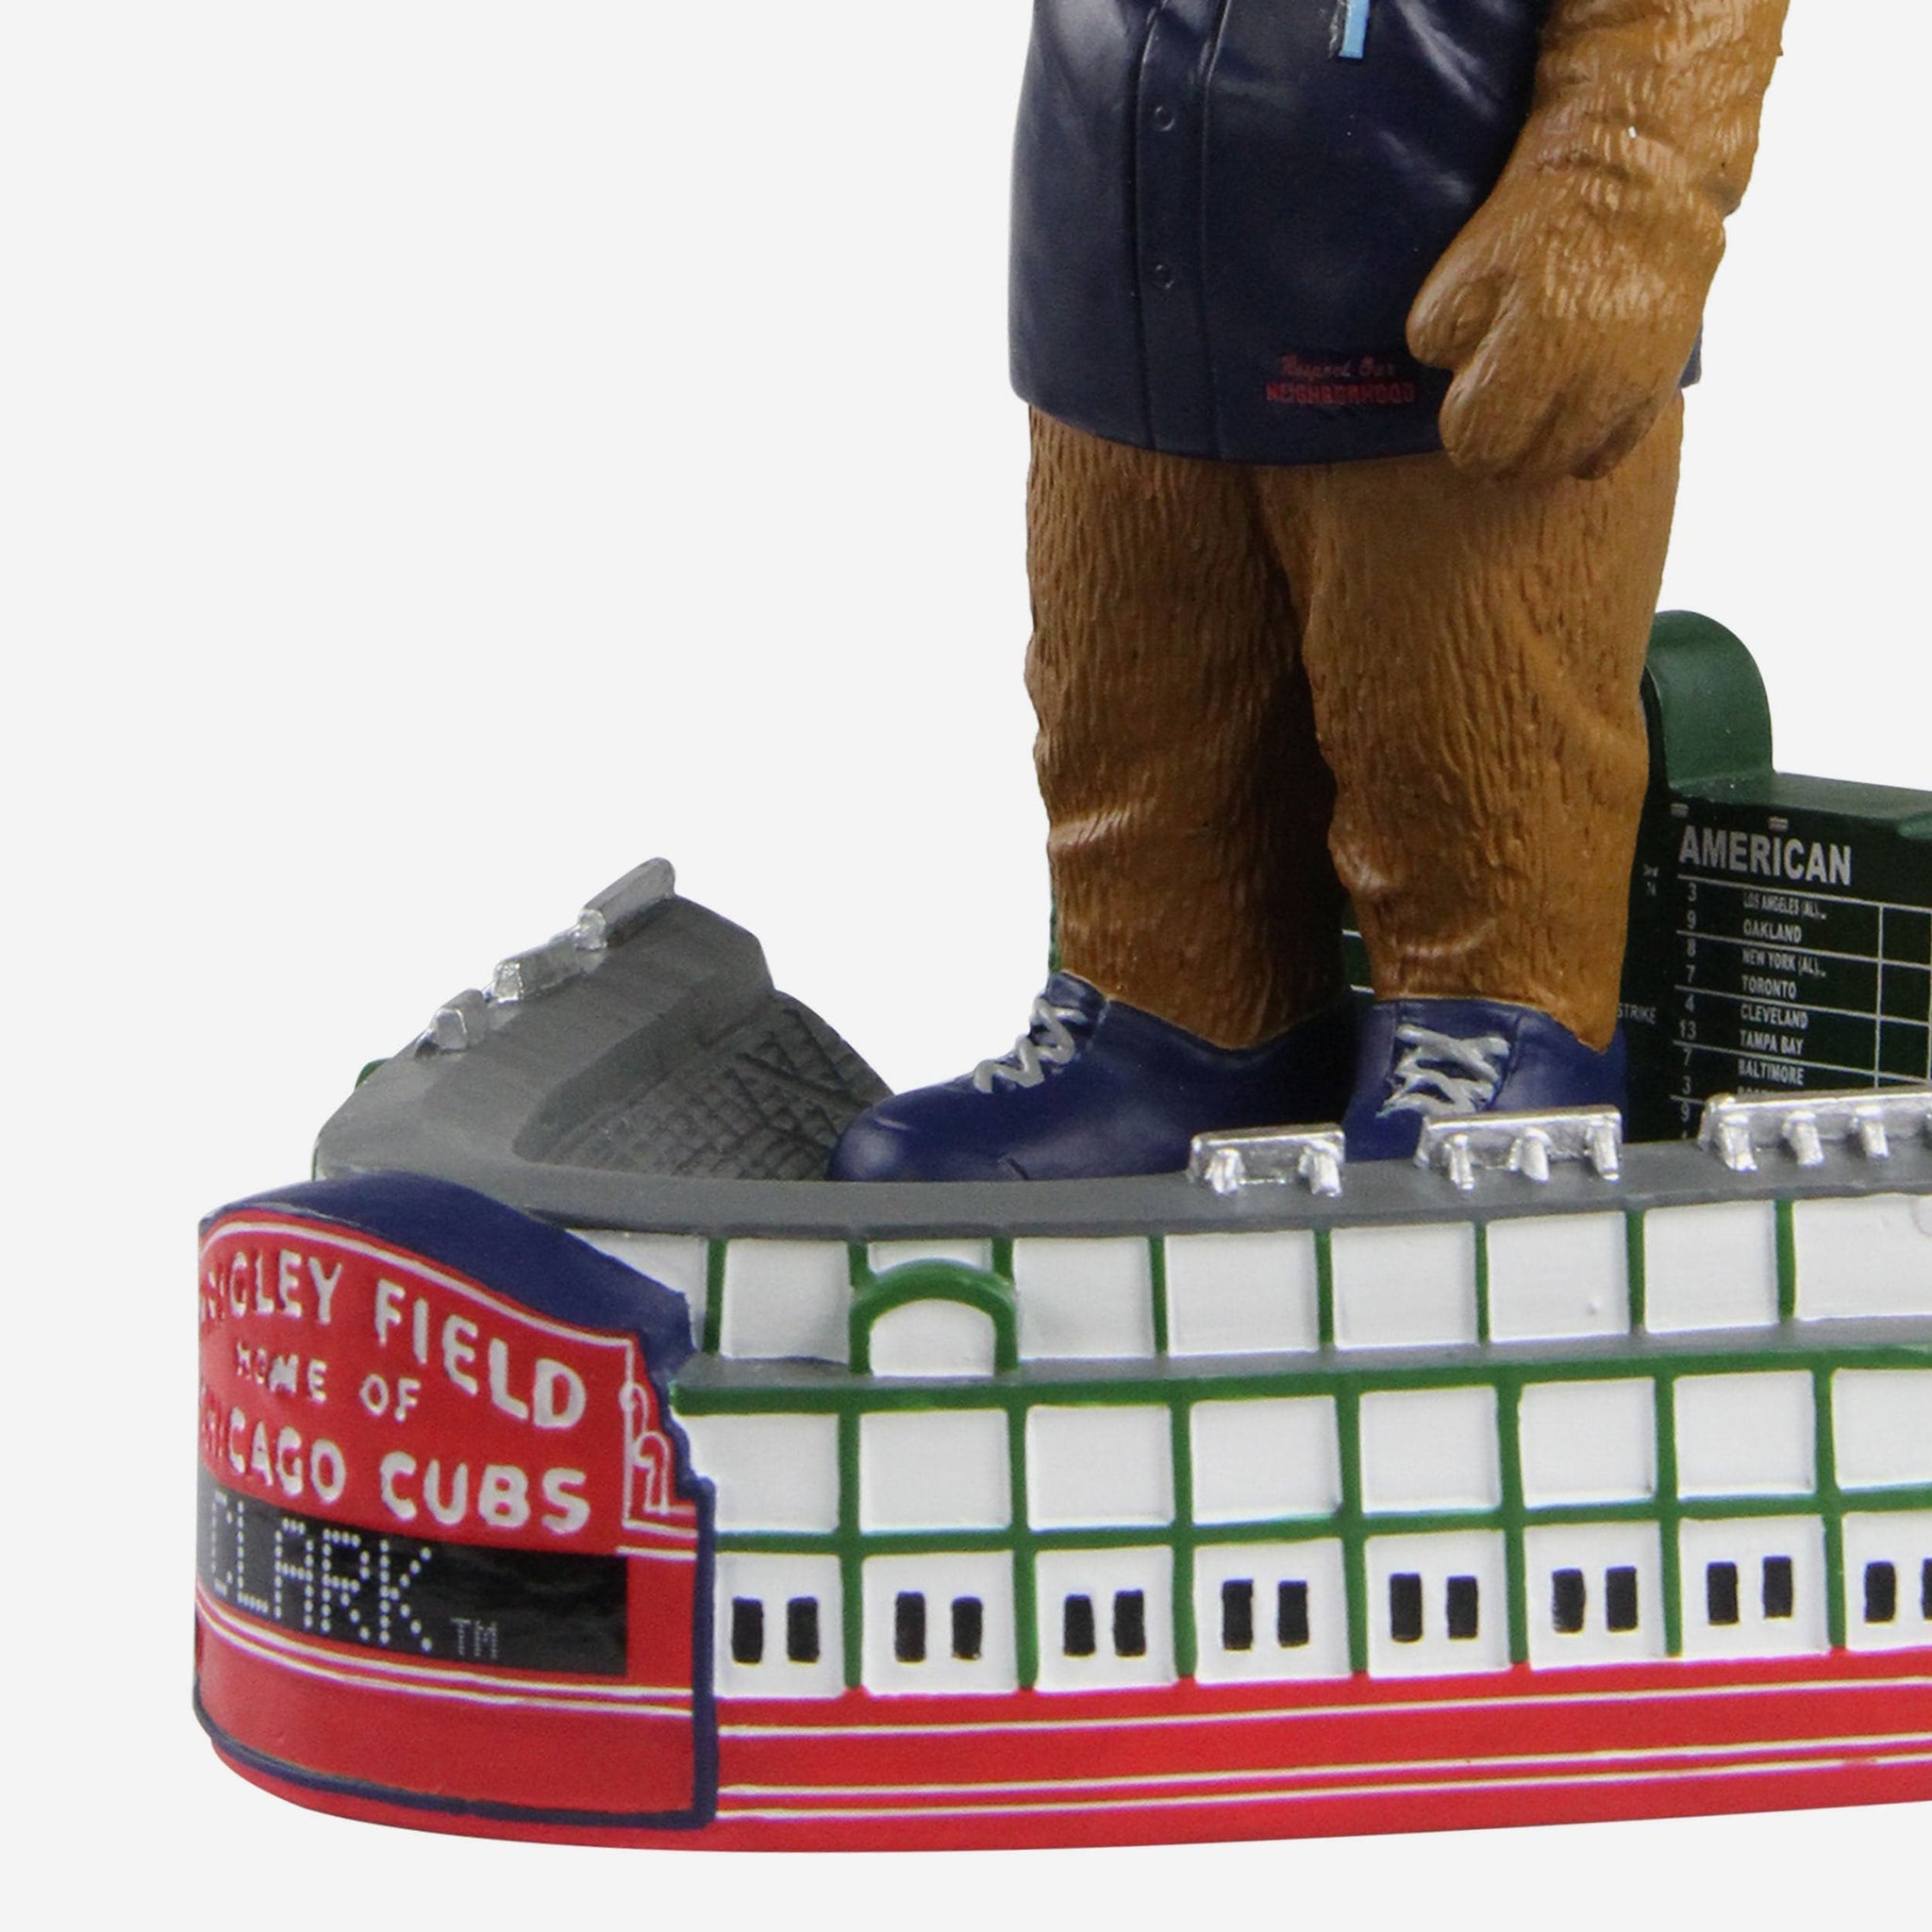 Clark Chicago Cubs Large Plush Mascot FOCO